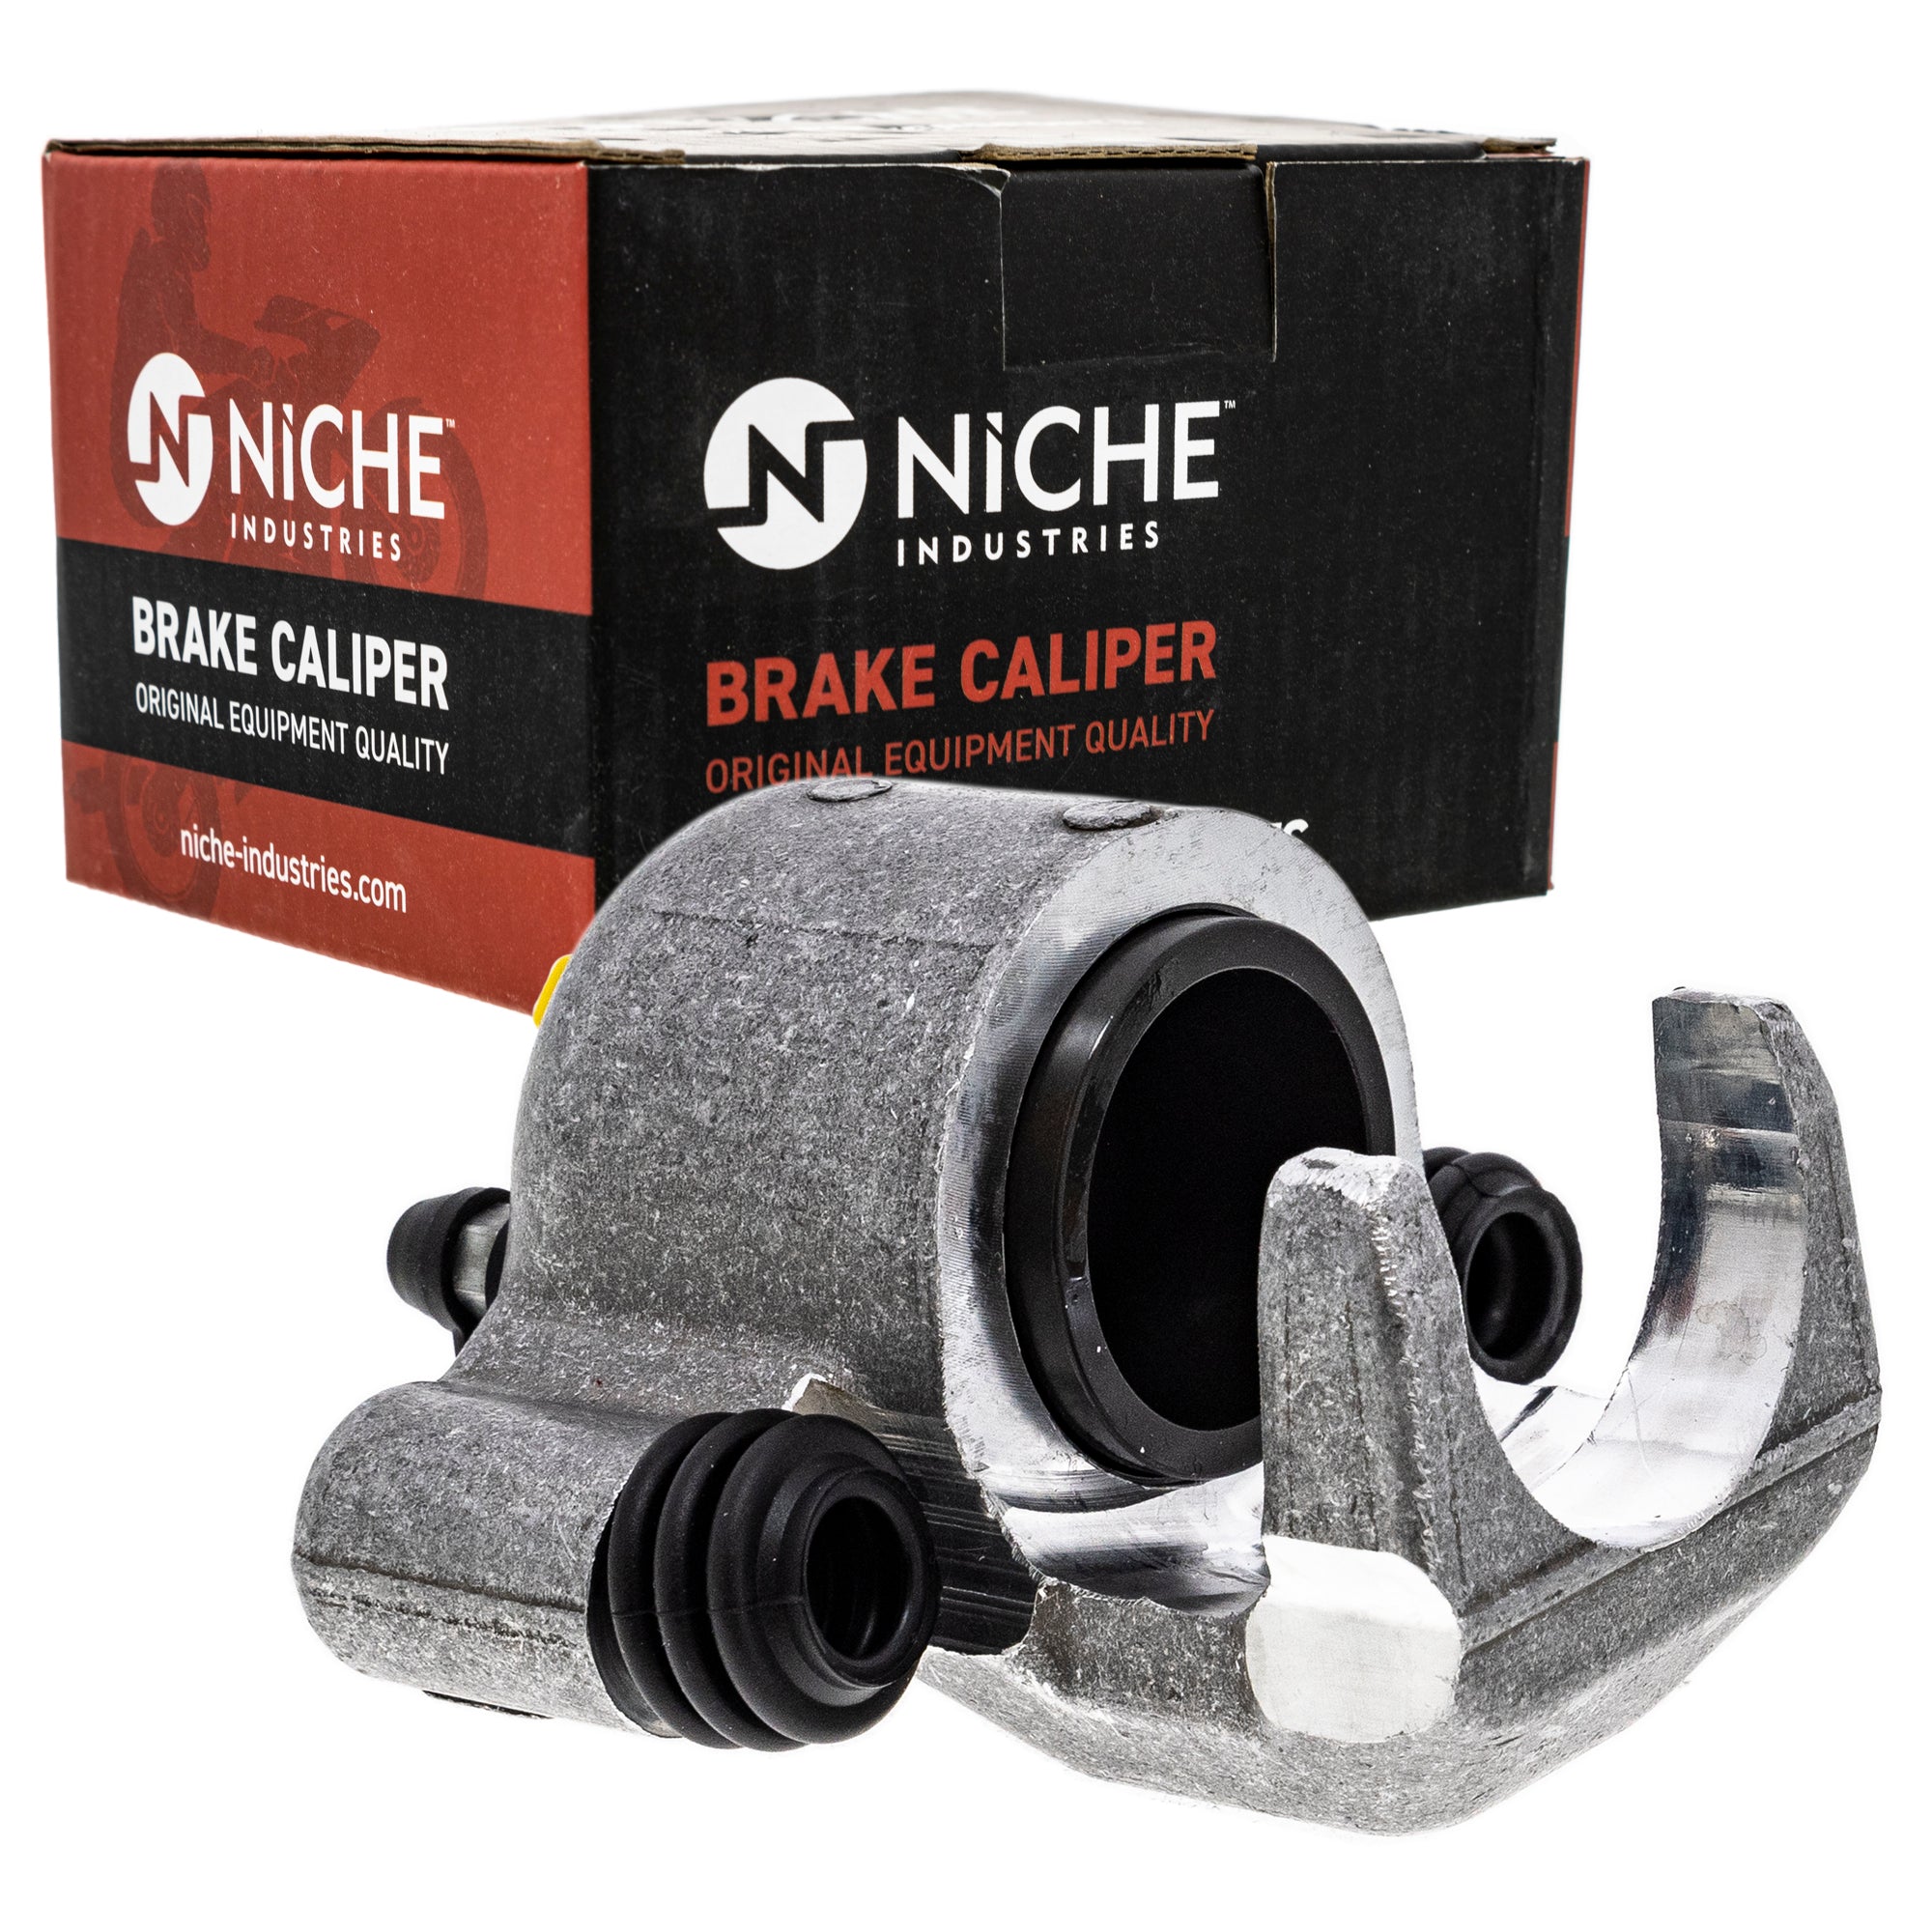 NICHE MK1001006 Brake Caliper Kit